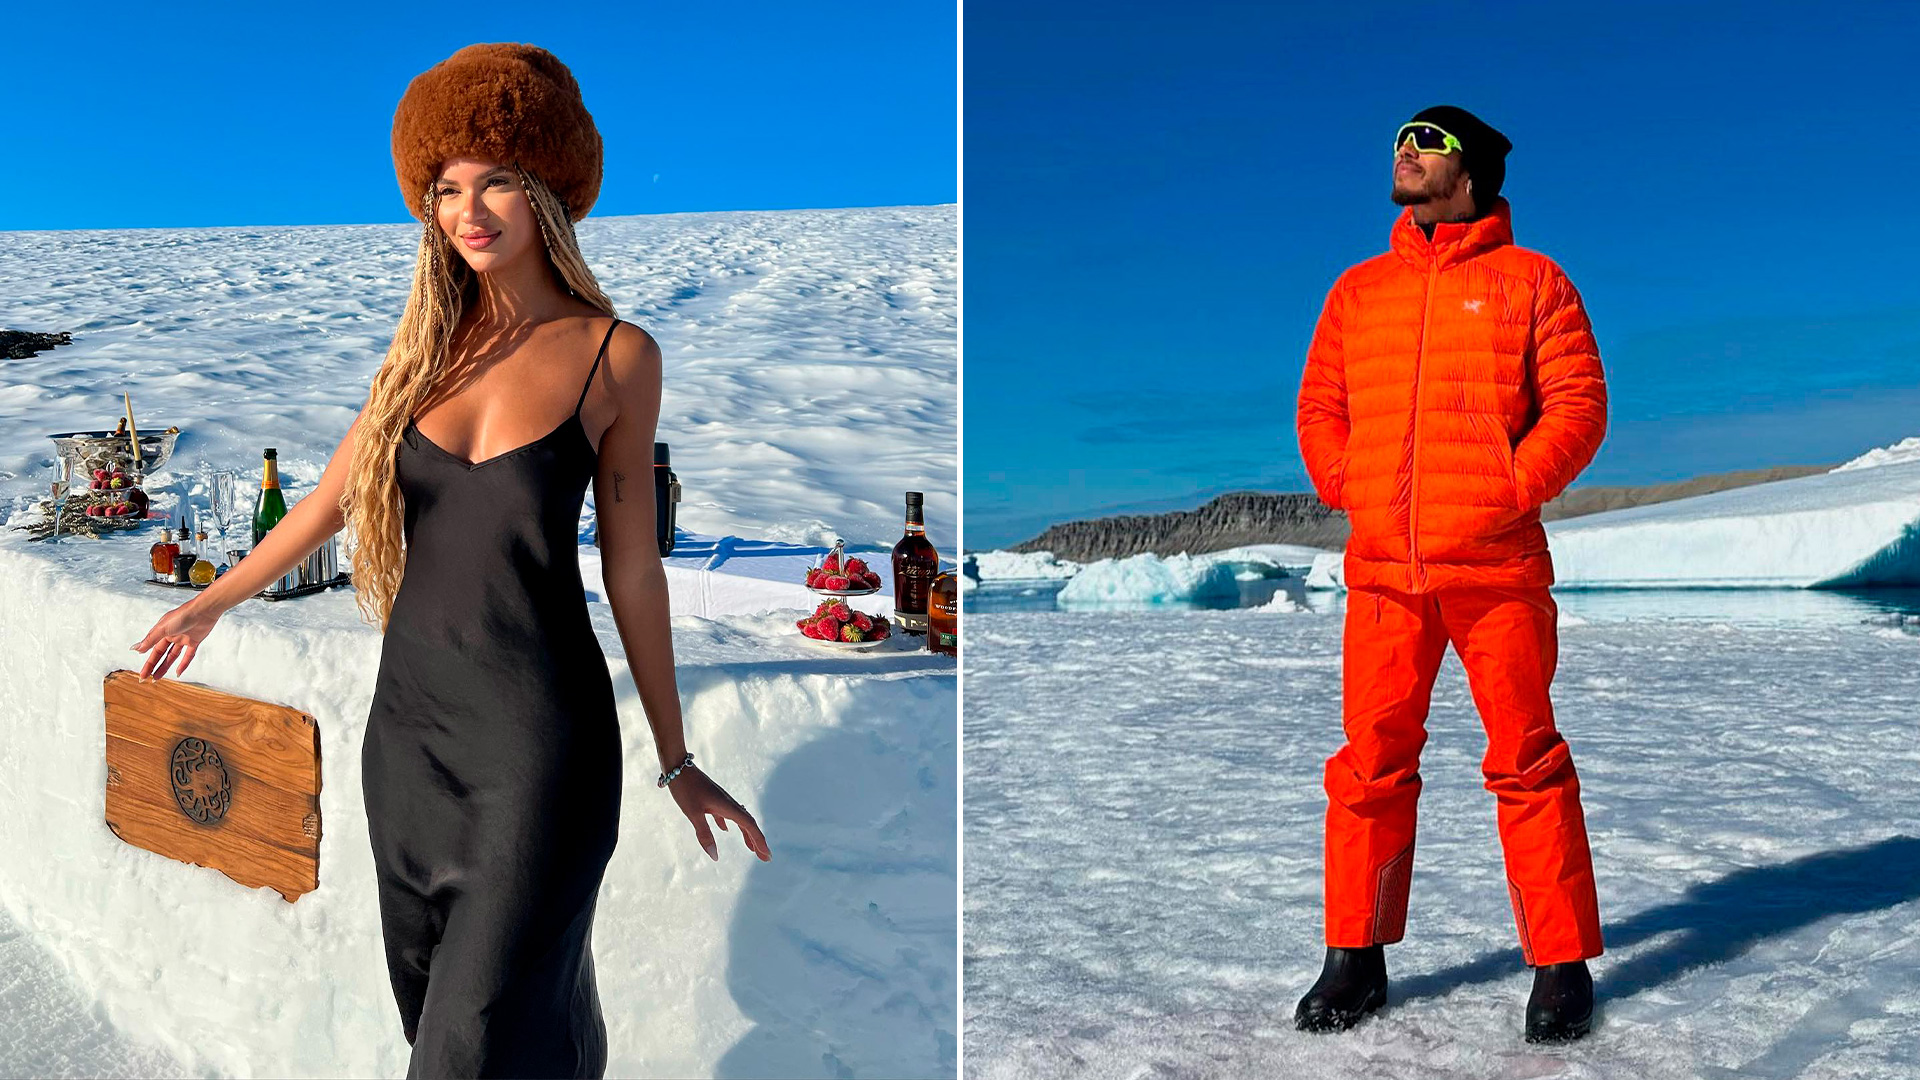 Las fotos de Juliana Nalu y Hamilton en la Antártida (@juliananalu y @lewishamilton)